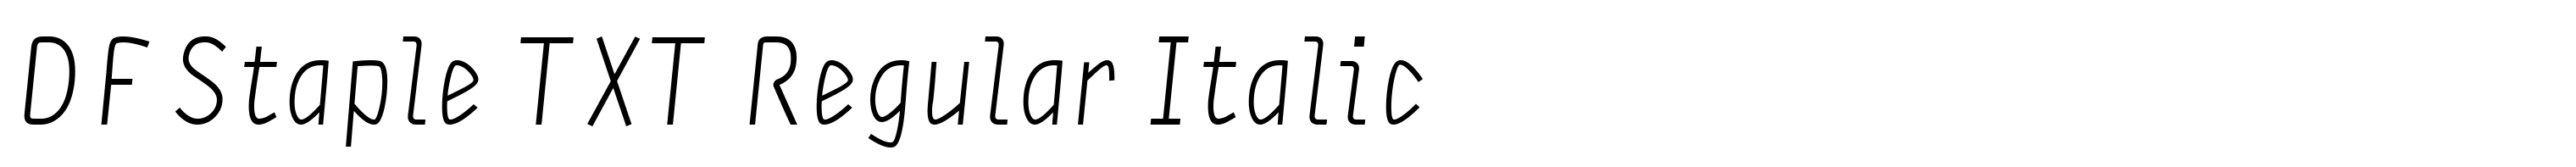 DF Staple TXT Regular Italic